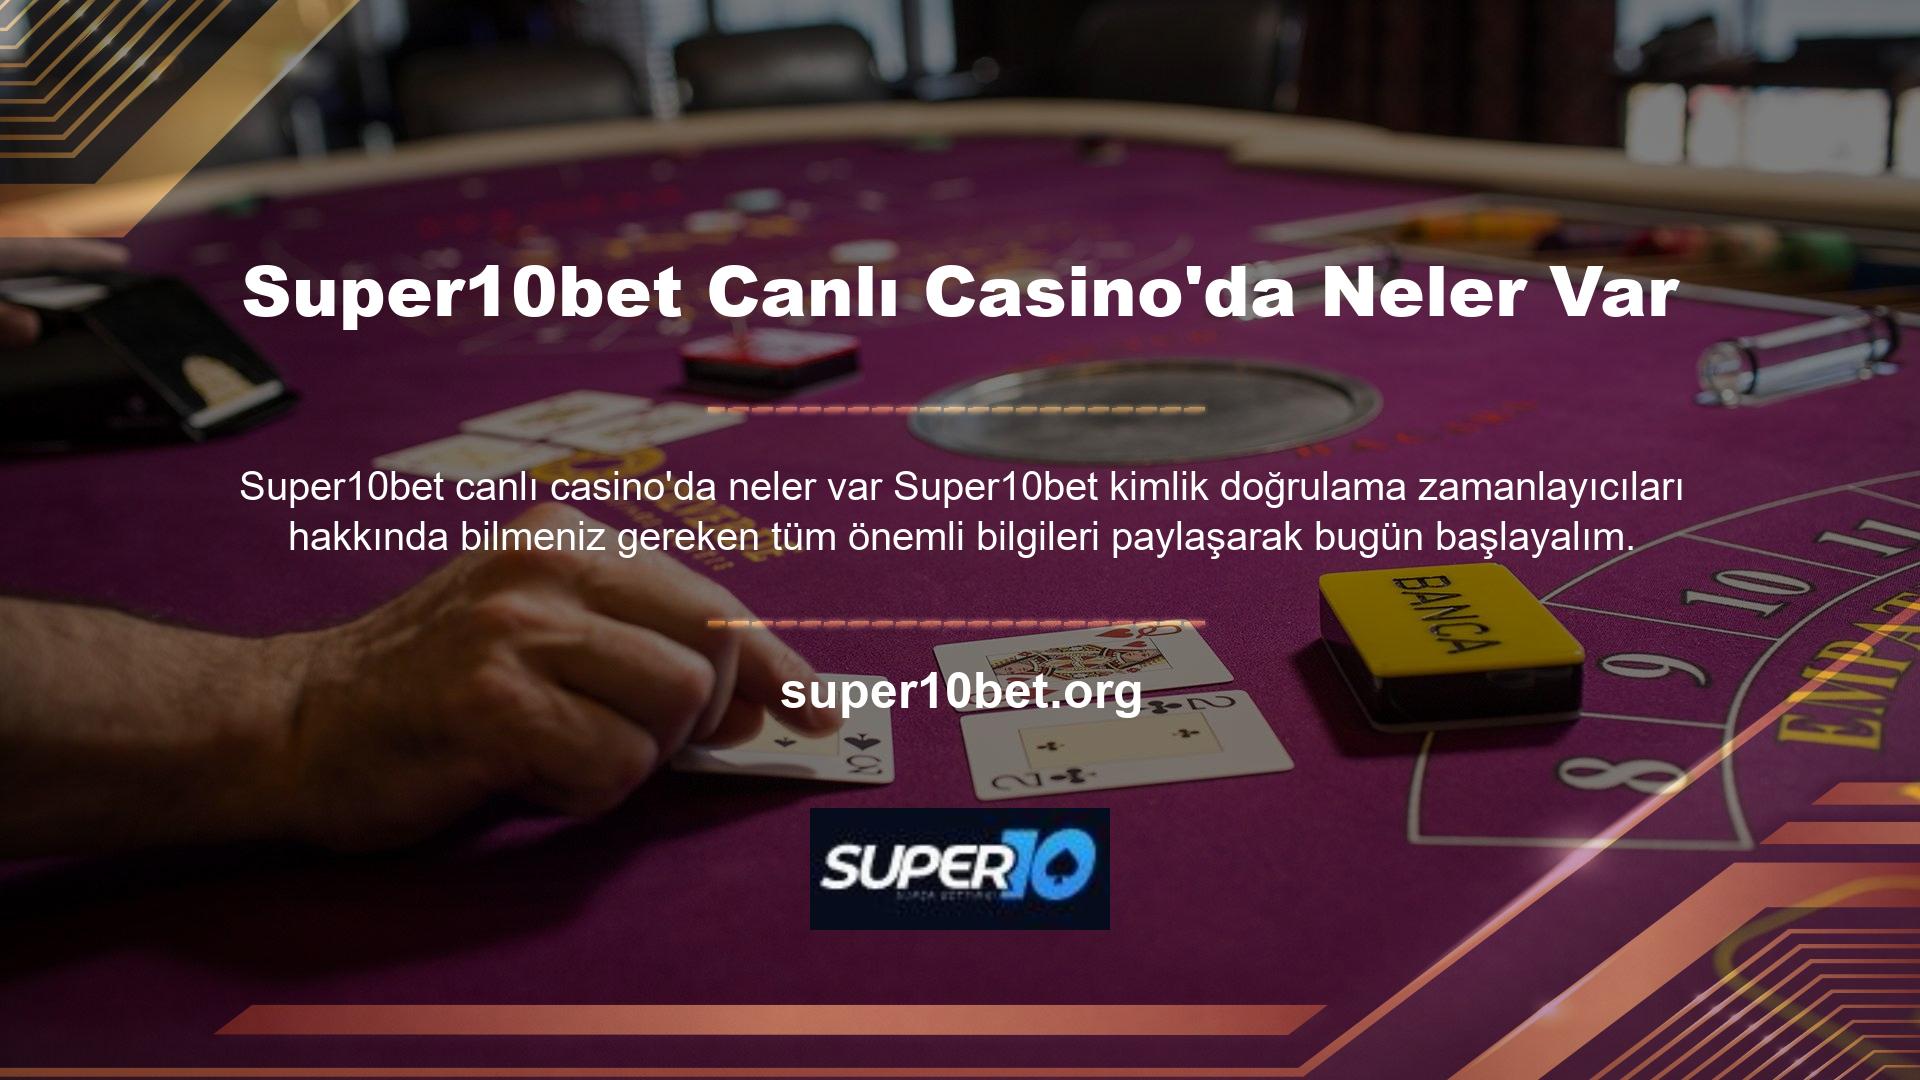 Super10bet canlı bahis sitesi ülkemizde kurulmuş olup alternatif Türk spor bahisleri ve casino hizmetleri sunmaktadır